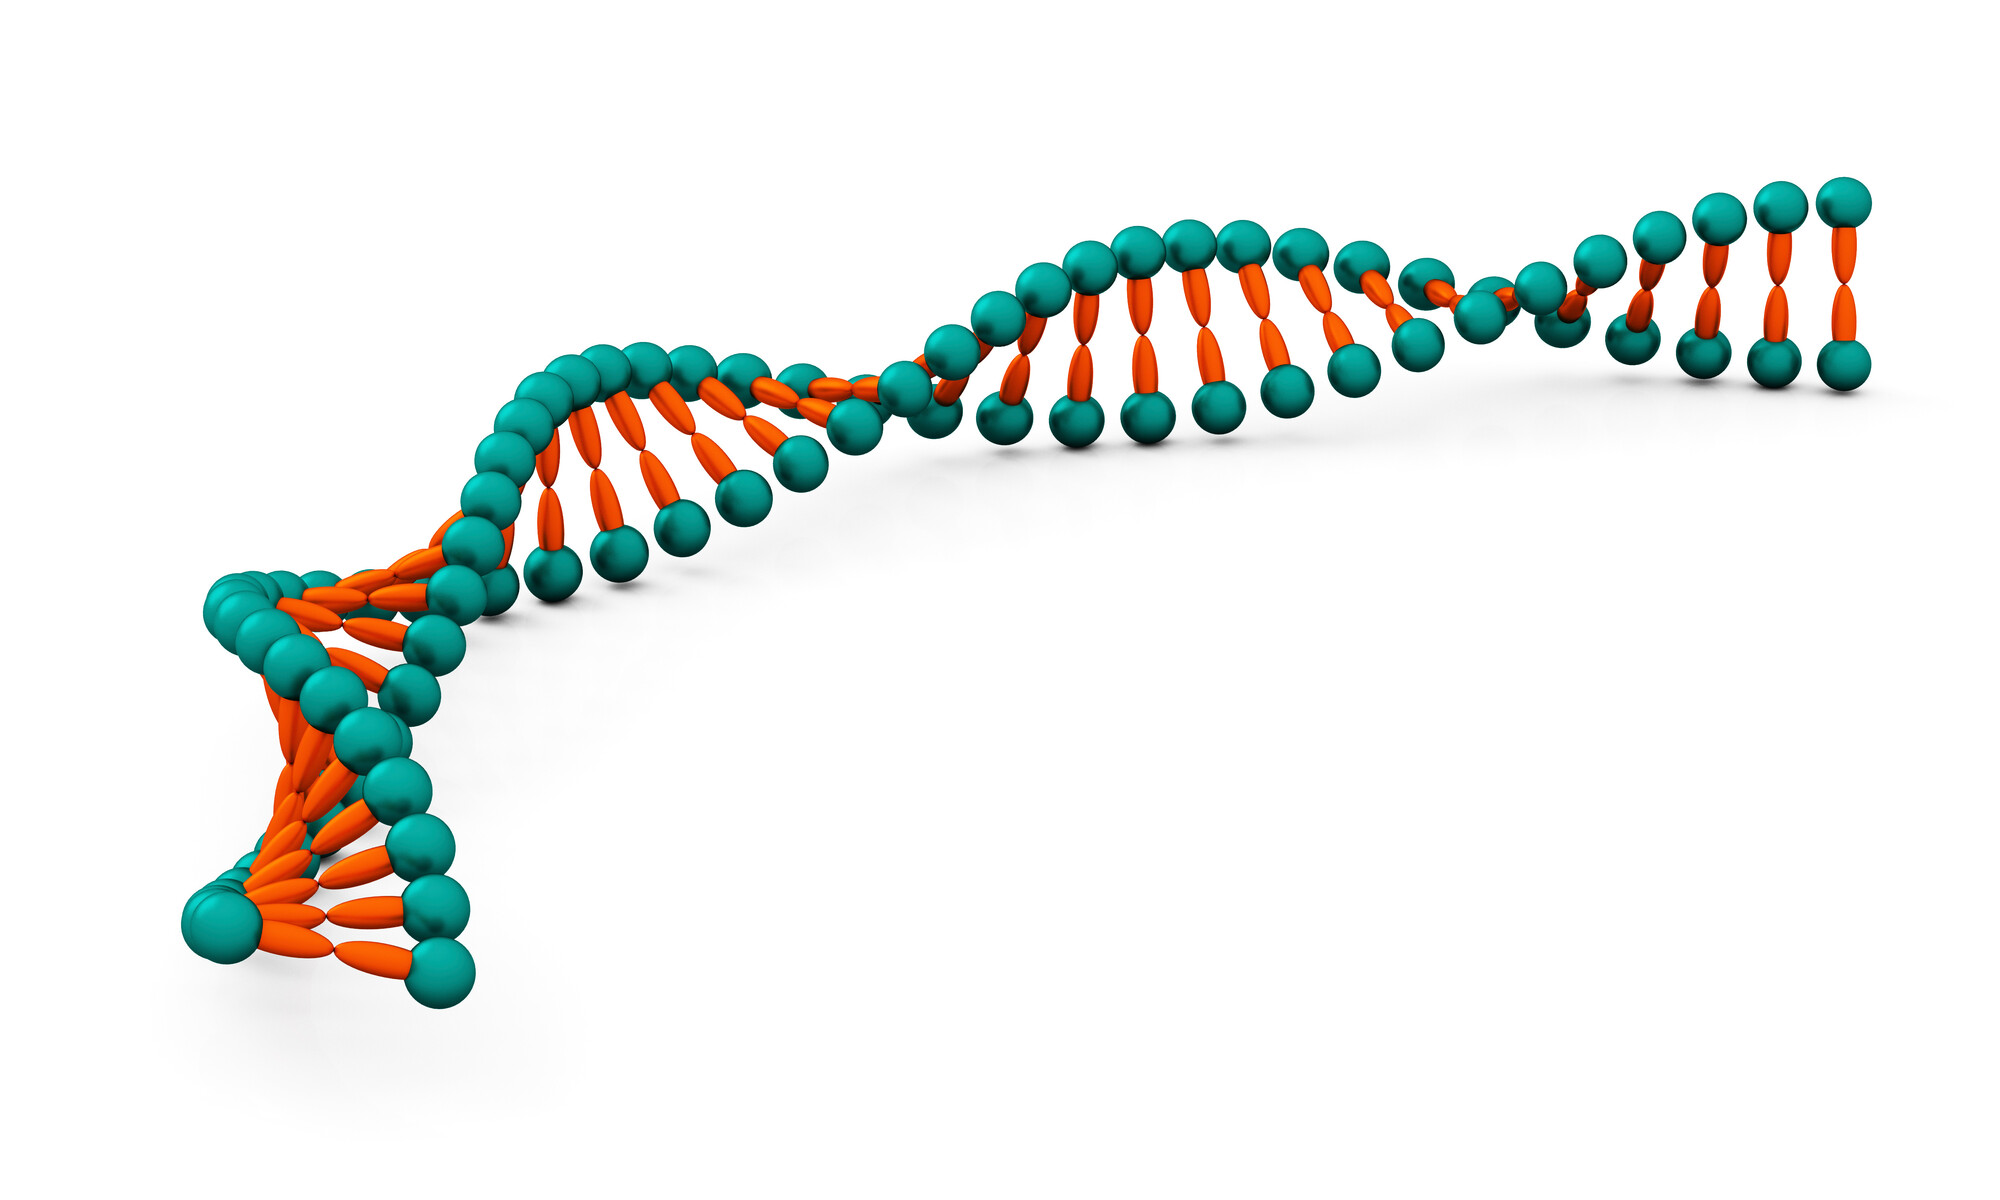 Die "Genschere" CRISPR/Cas9 kann im menschlichen Erbgut zielgenau mutierte Gene ausschneiden, verändern oder einfügen. Jetzt ist erstmals ein Medikament, das auf dieser Technik basiert, zugelassen worden.